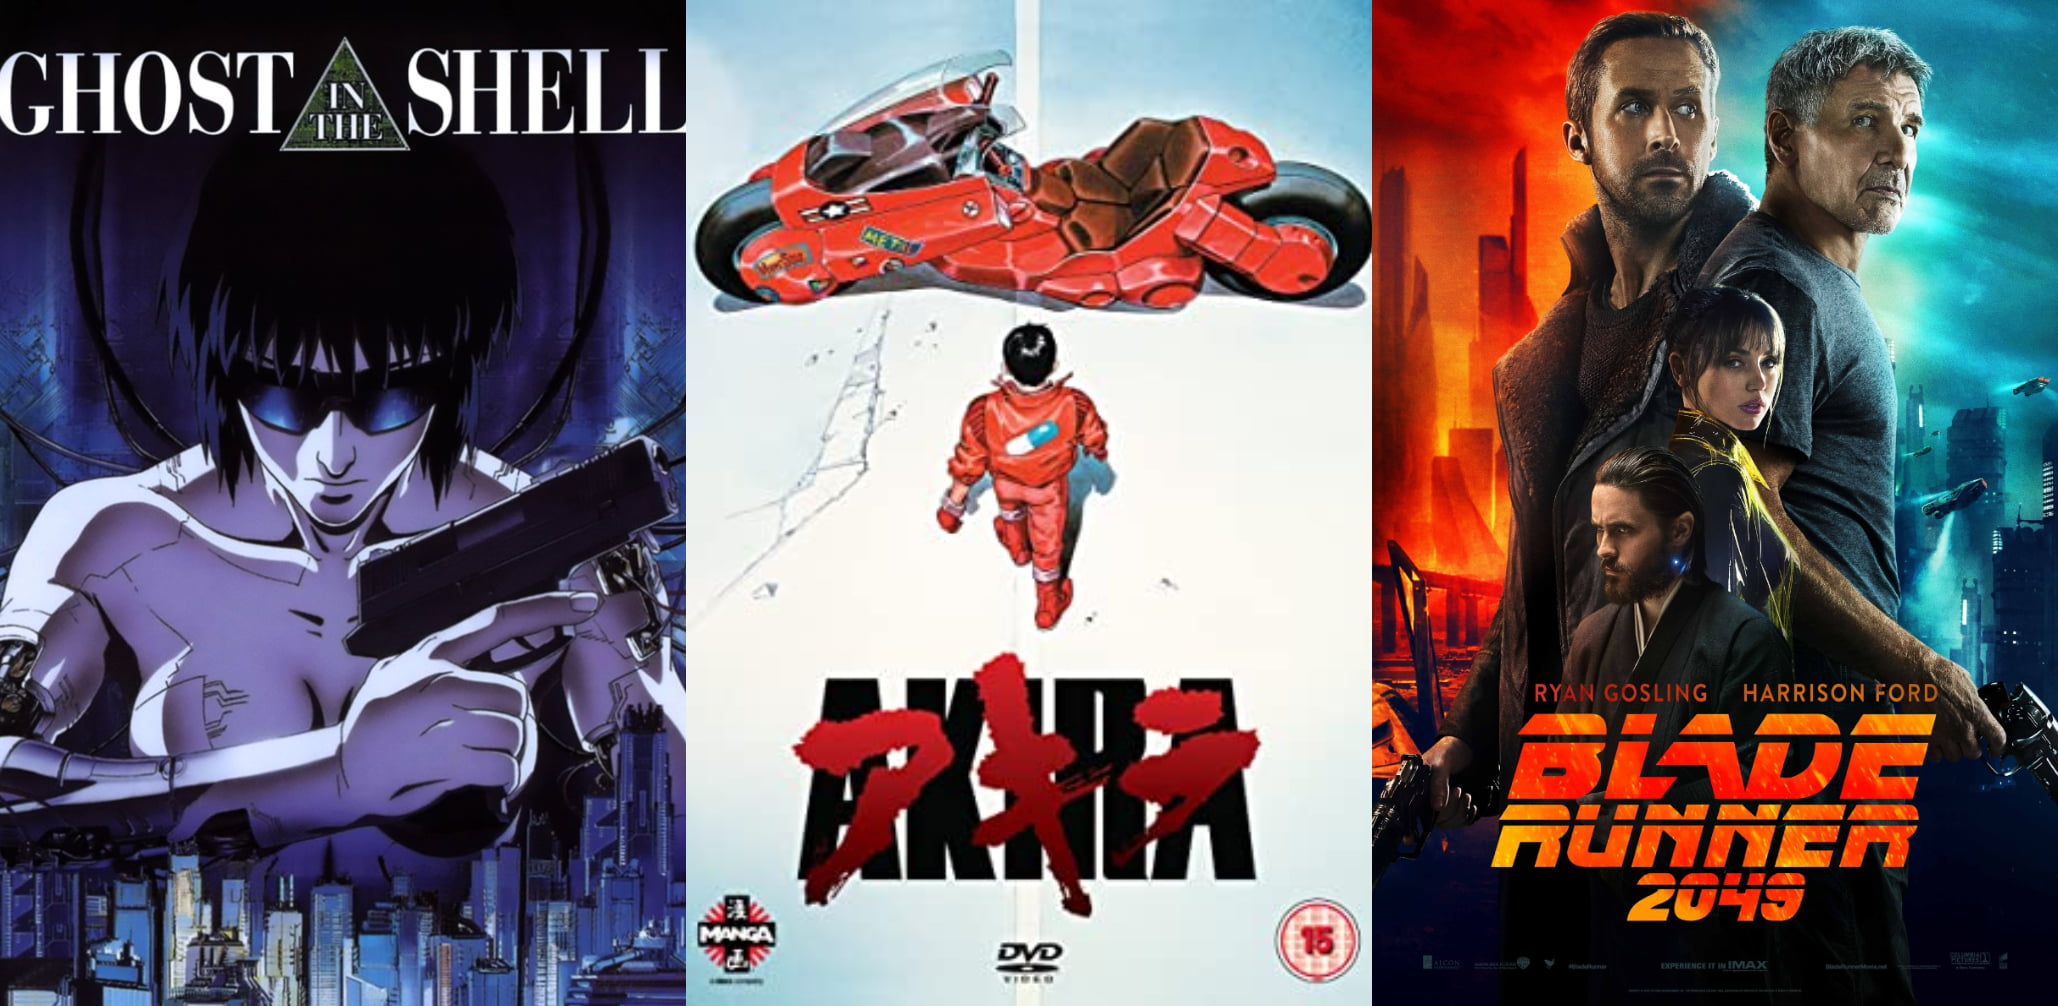 10 grandes películas y series de Cyberpunk disponibles en Netflix